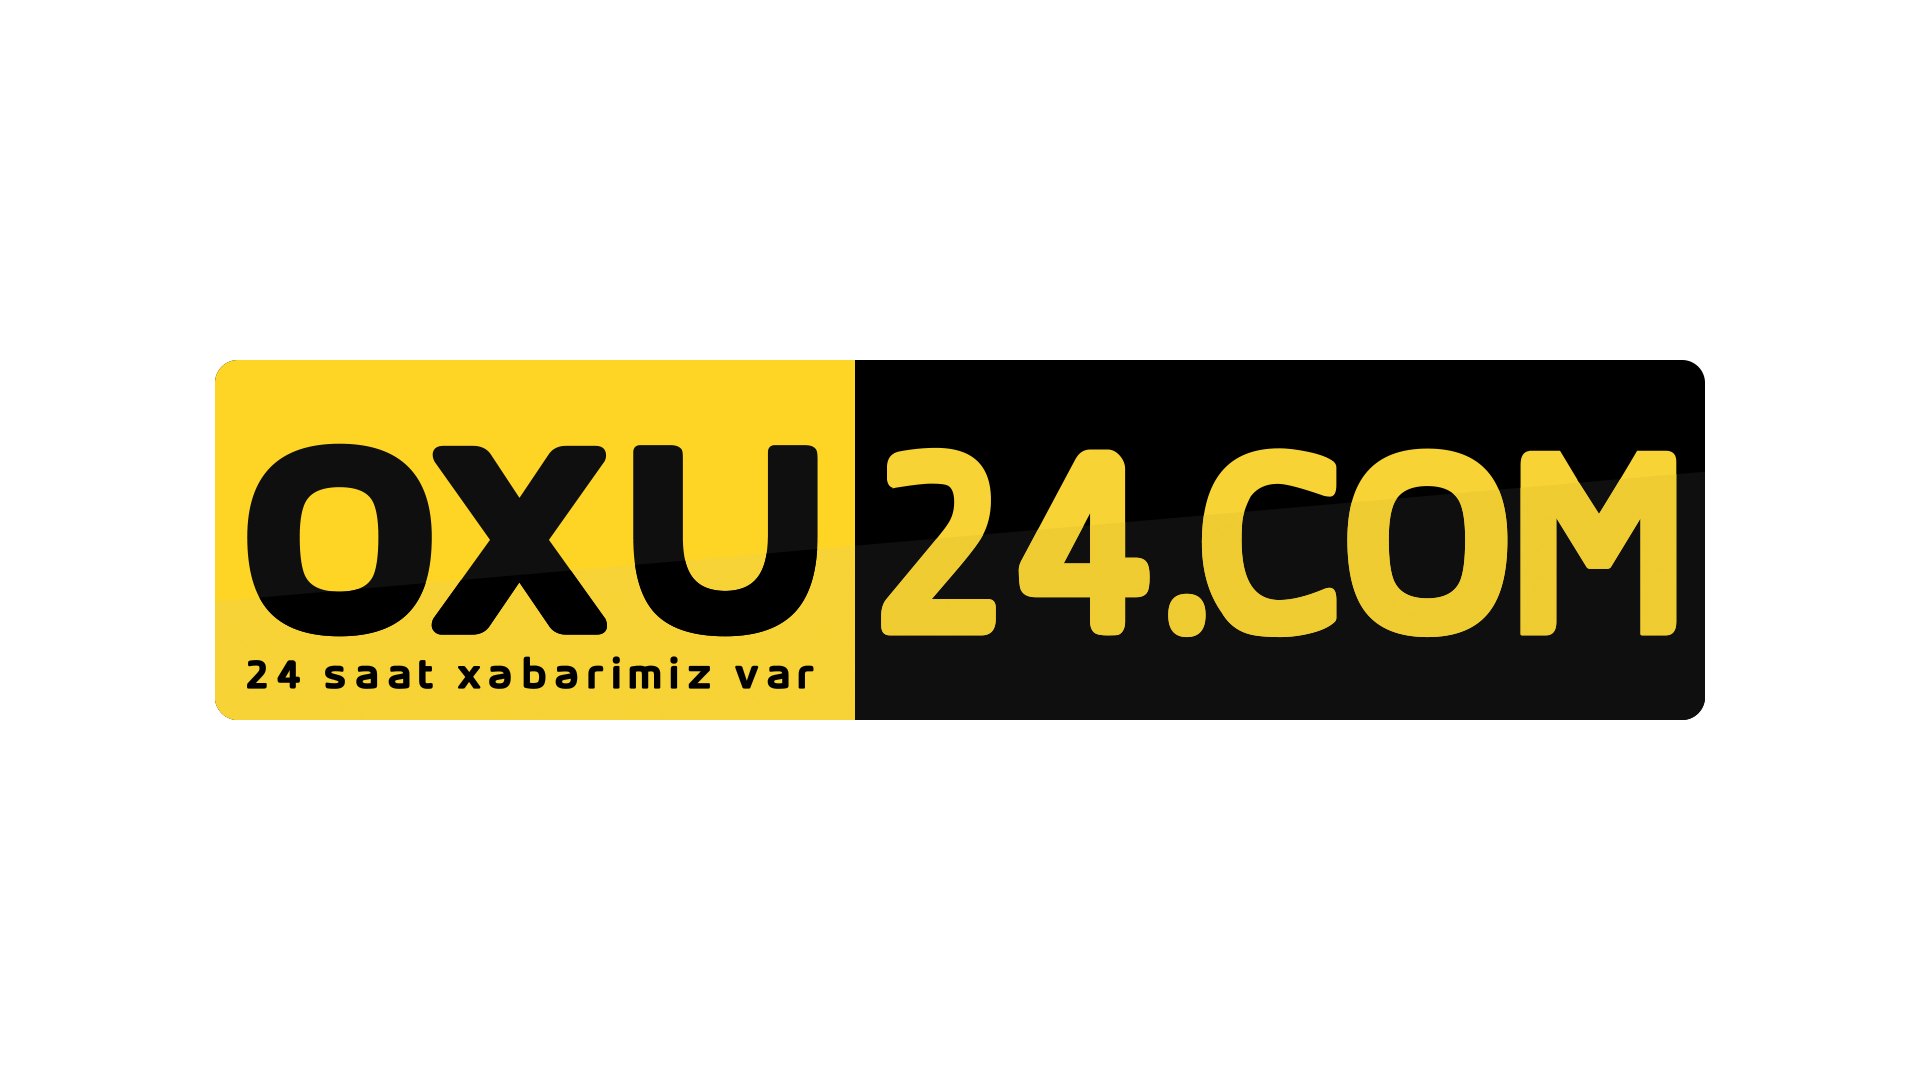 Oxu24.com